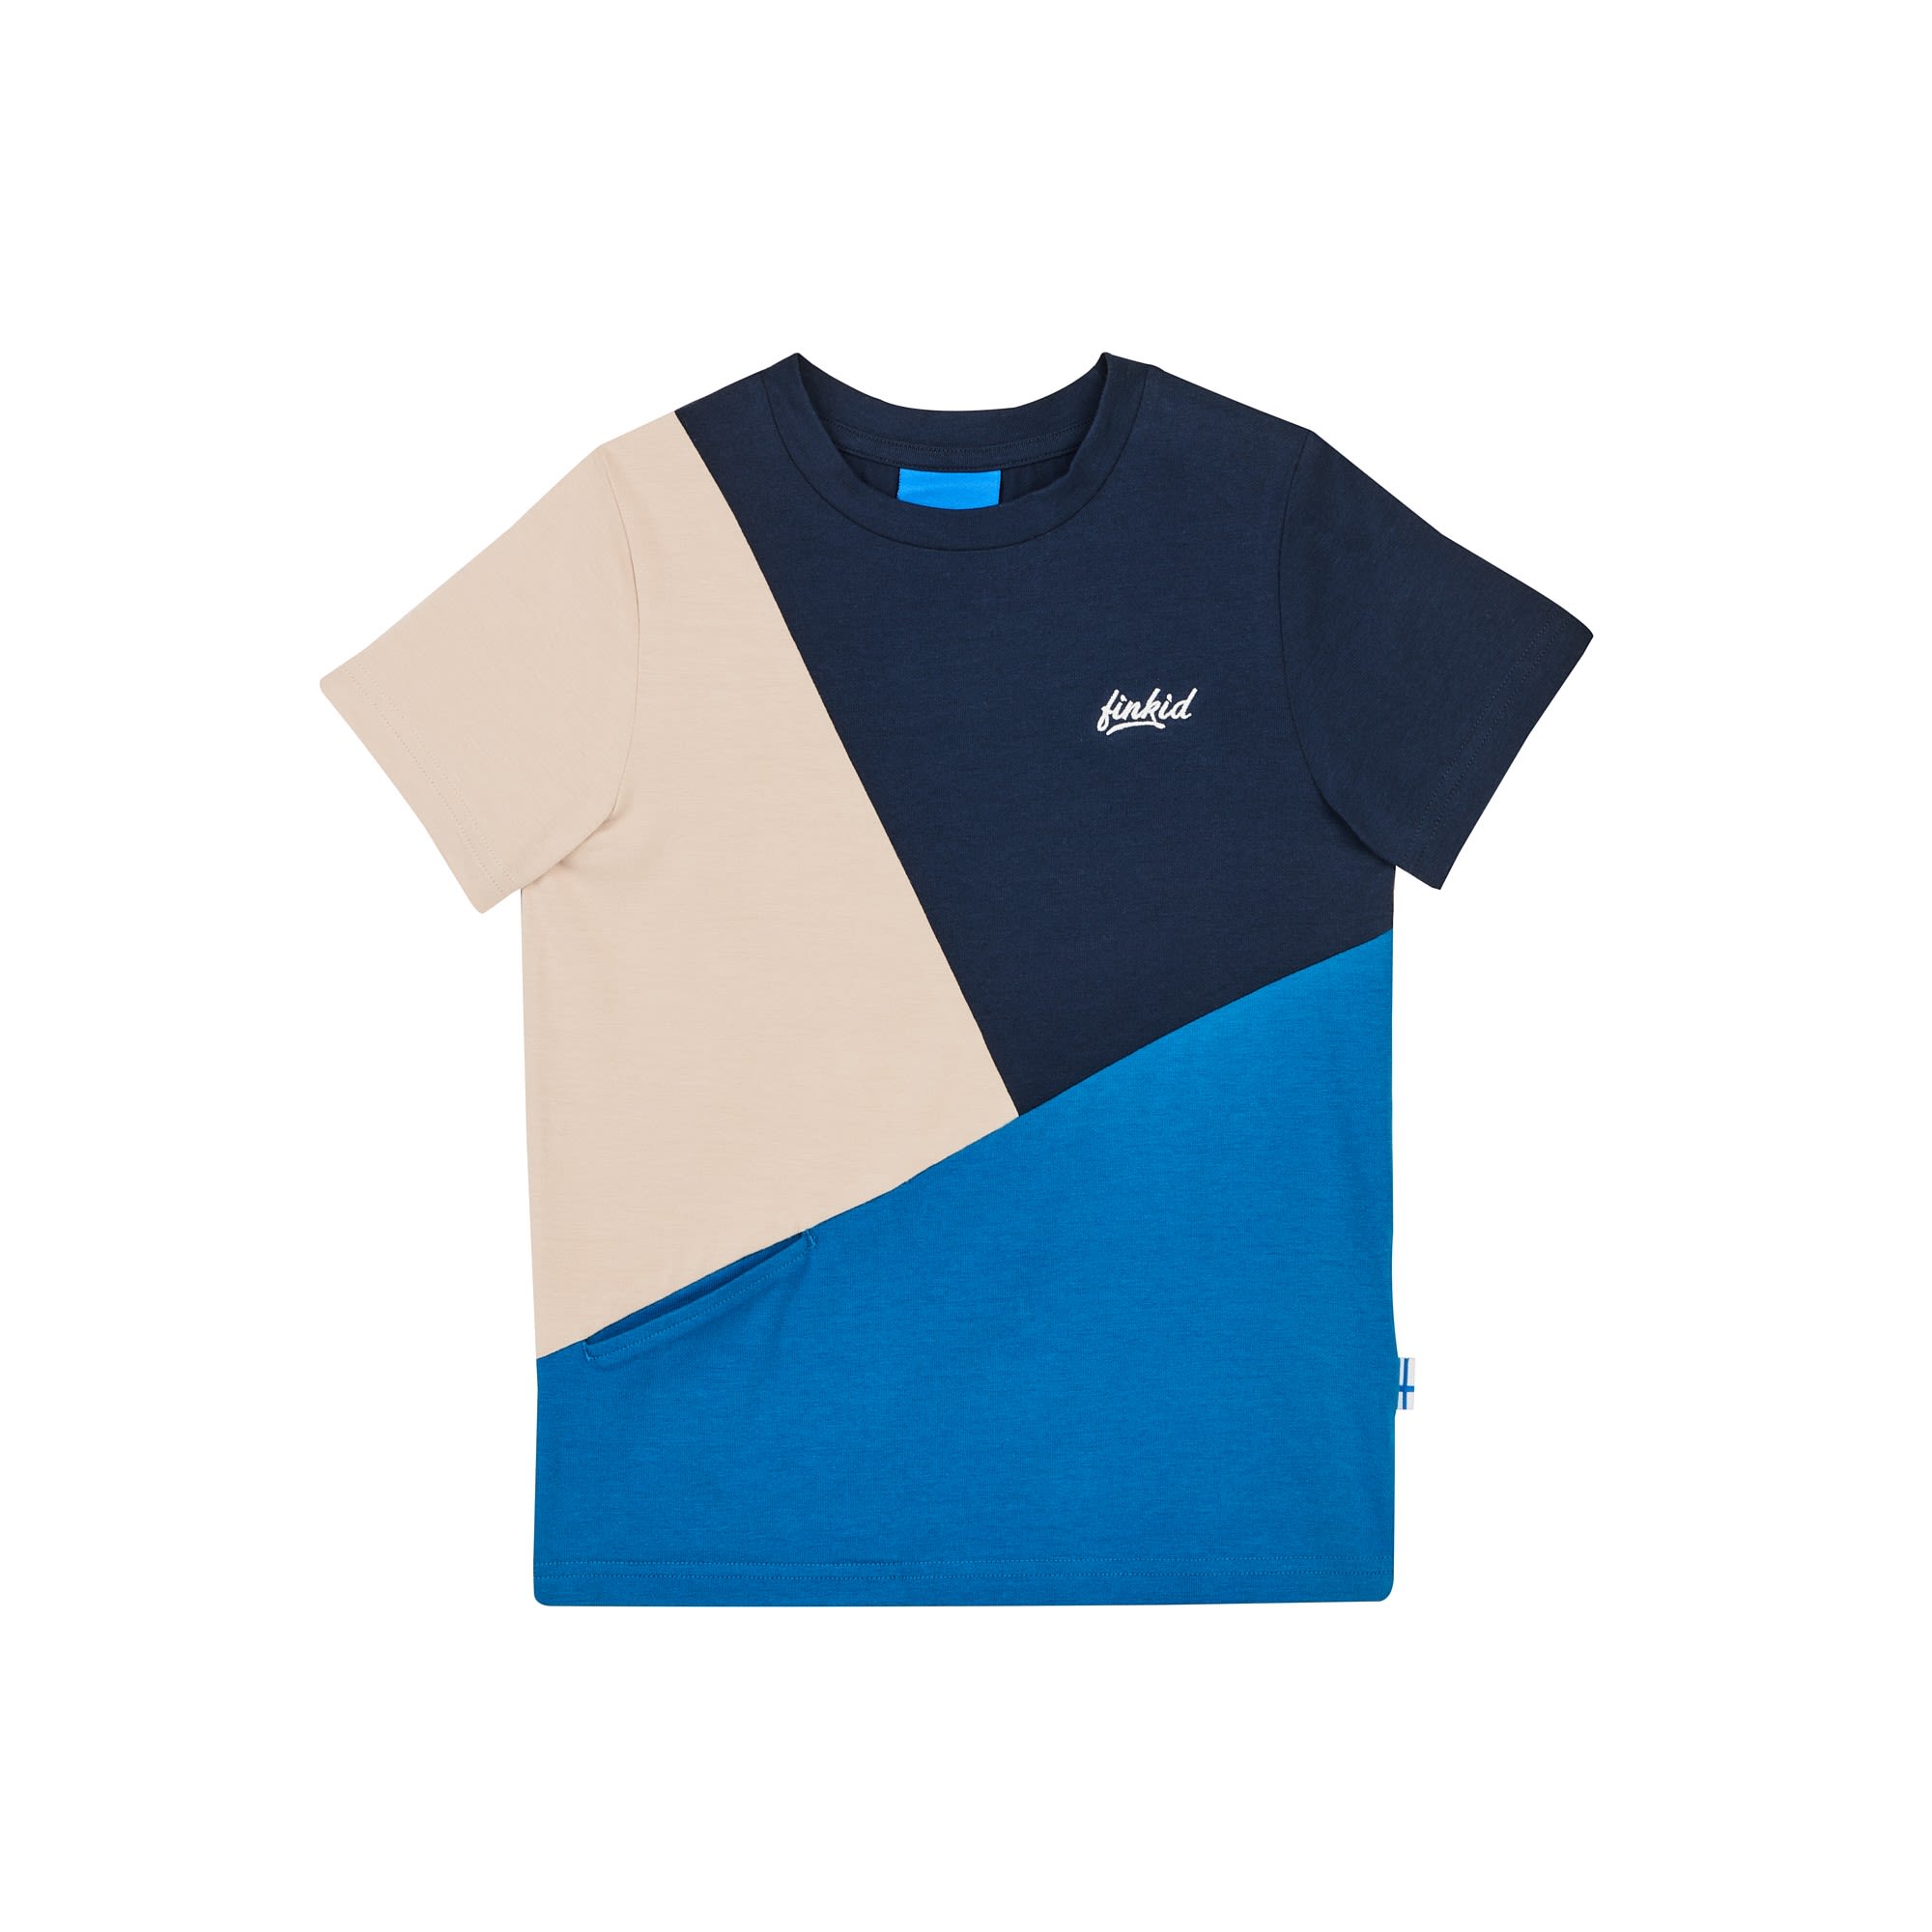 Finkid Ankkuri (Vorgngermodell) Colorblock - Blau - Weiss- Kurzarm-Shirts- Grsse 80 - 90 - Farbe Navy - Nautic unter Finkid